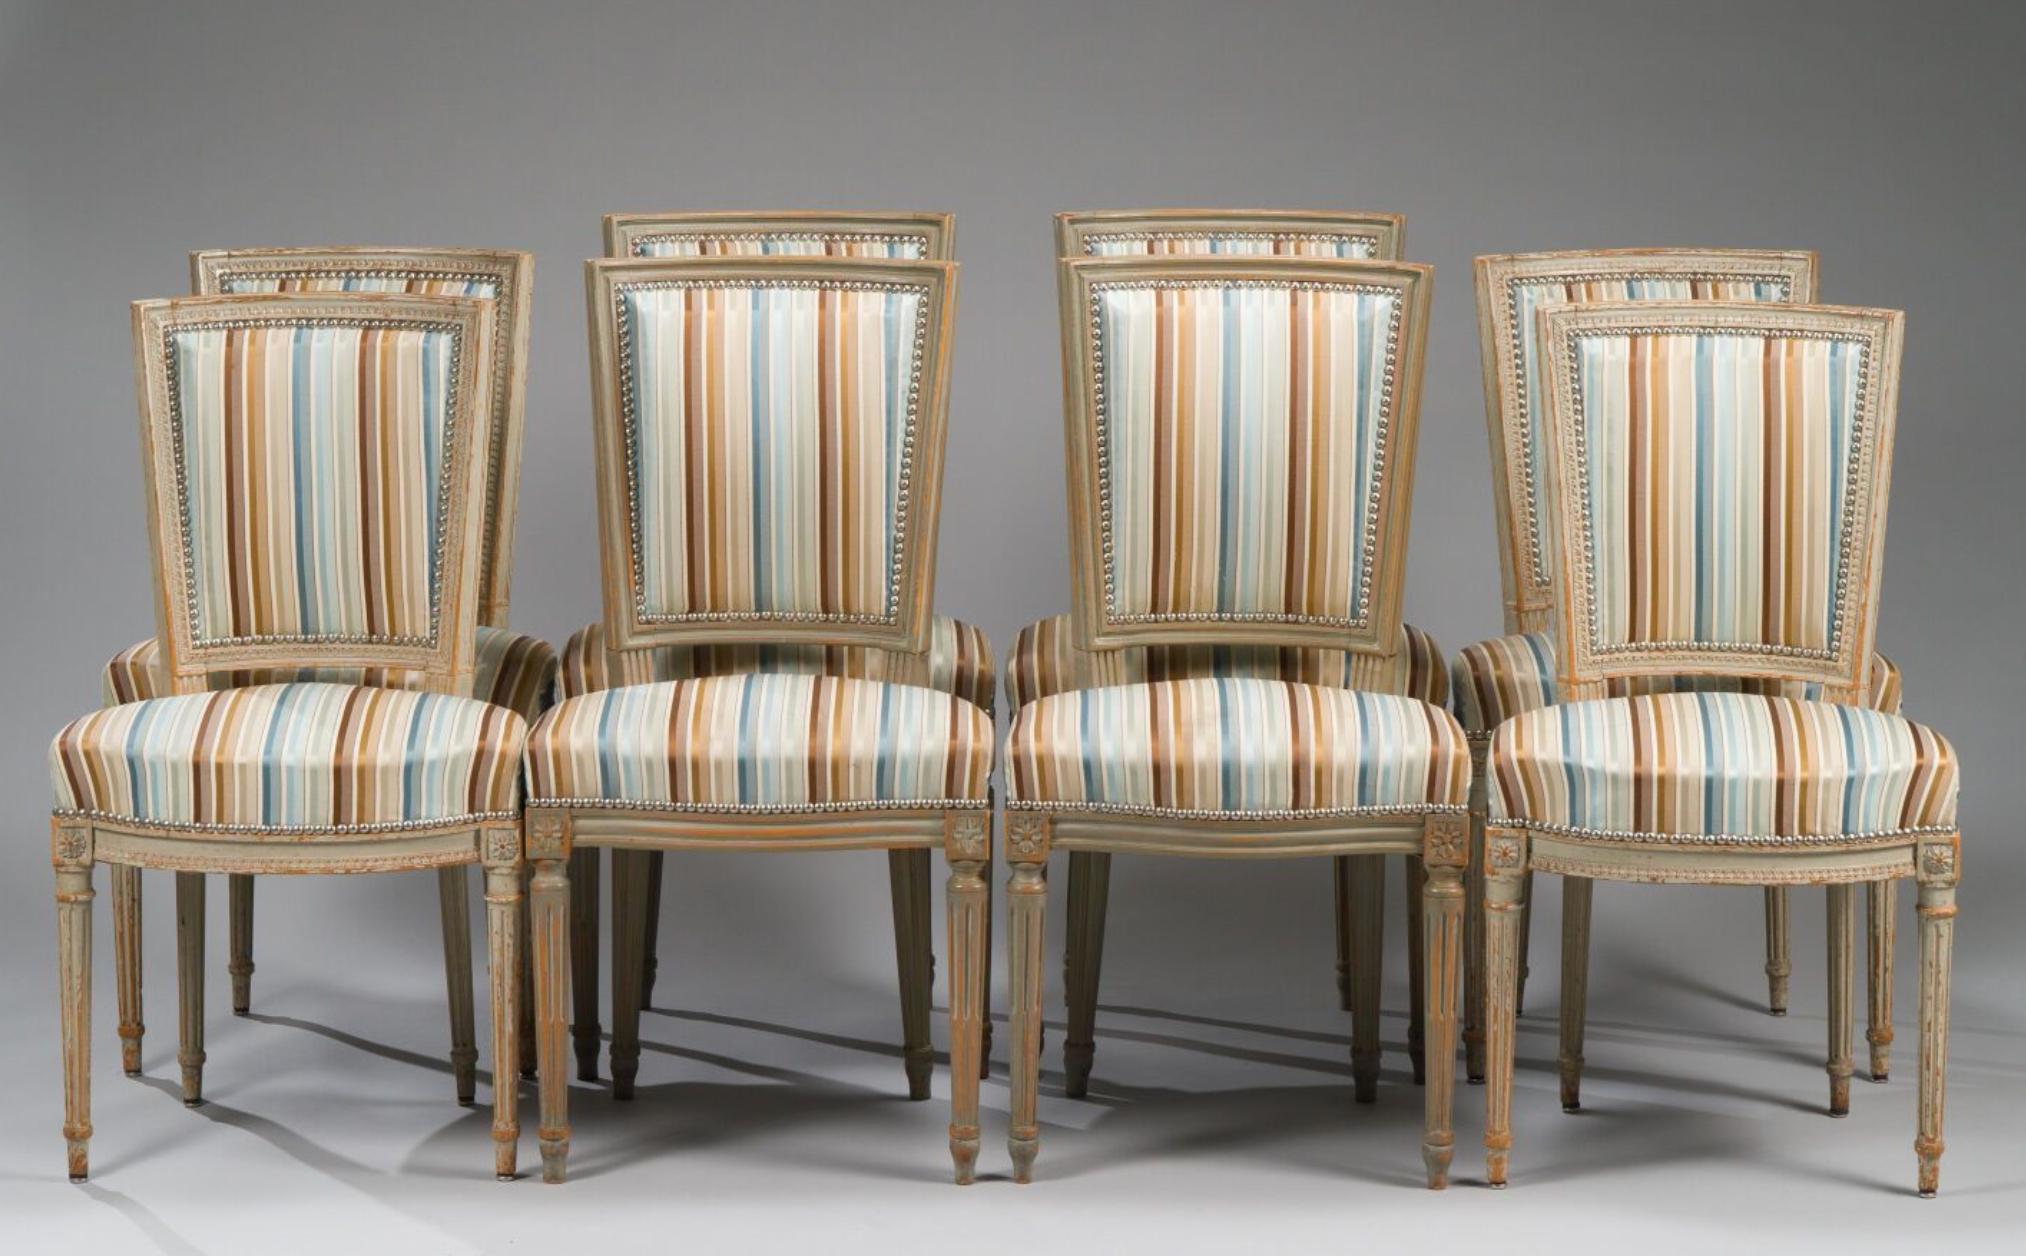 Acht handgeschnitzte französische Esszimmerstühle im Louis-XVI-Stil des 19. Jahrhunderts. Alle Stühle sind in sehr gutem, authentischem Zustand und tragen noch die originalen Seidenbezüge.
Frankreich, um 1880